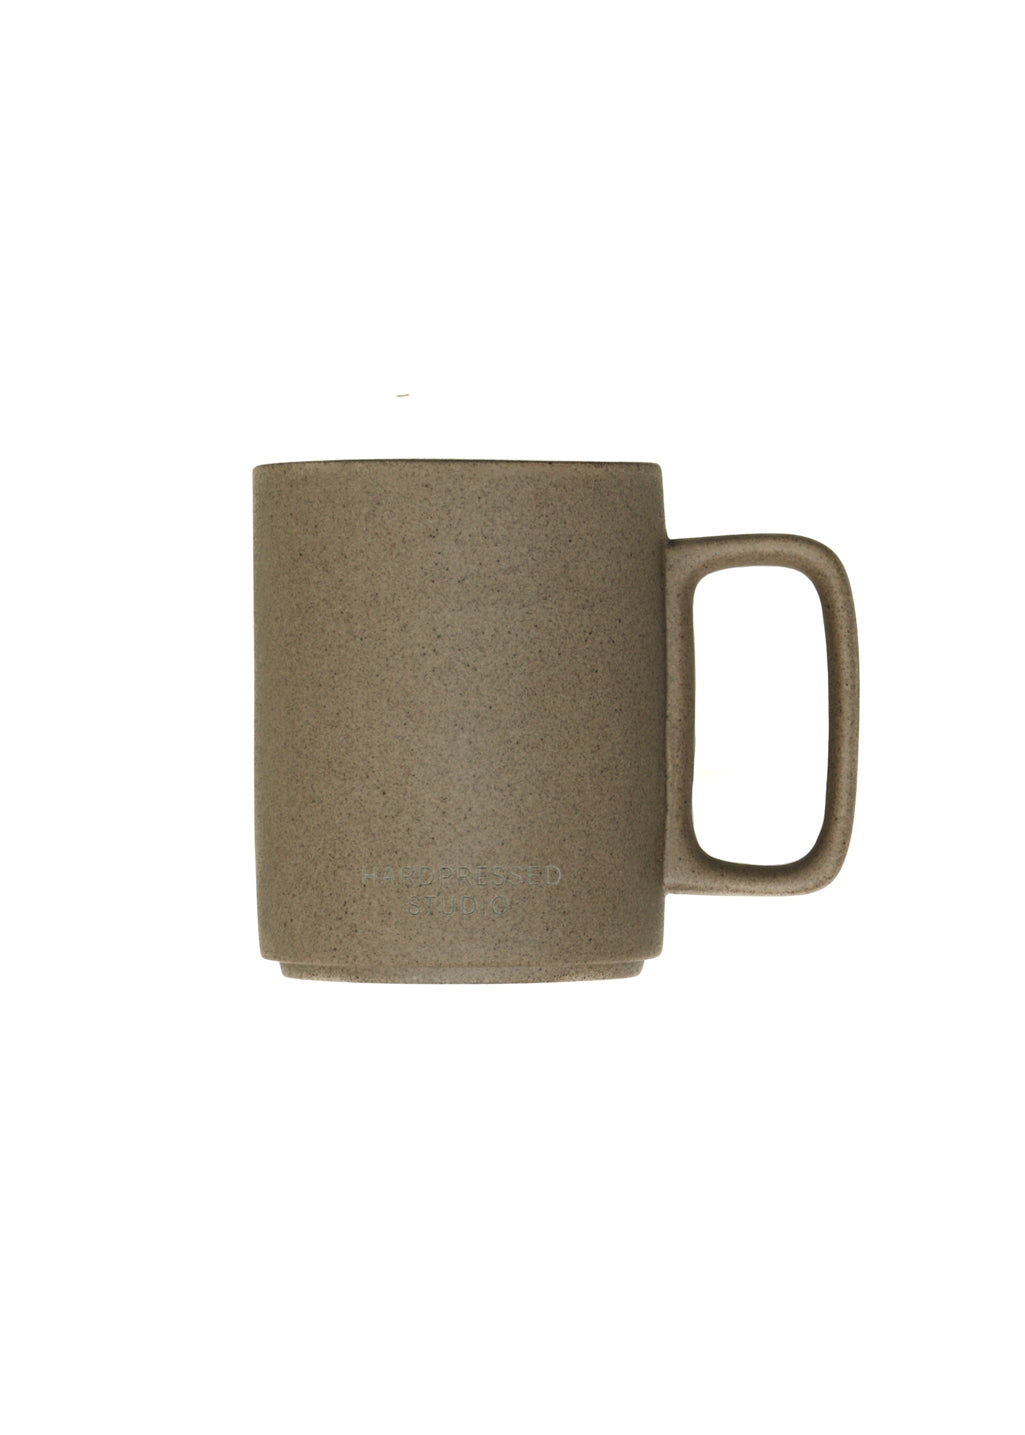 Ceramic Grain Mug | Unglazed - Hardpressed Print Studio Inc.